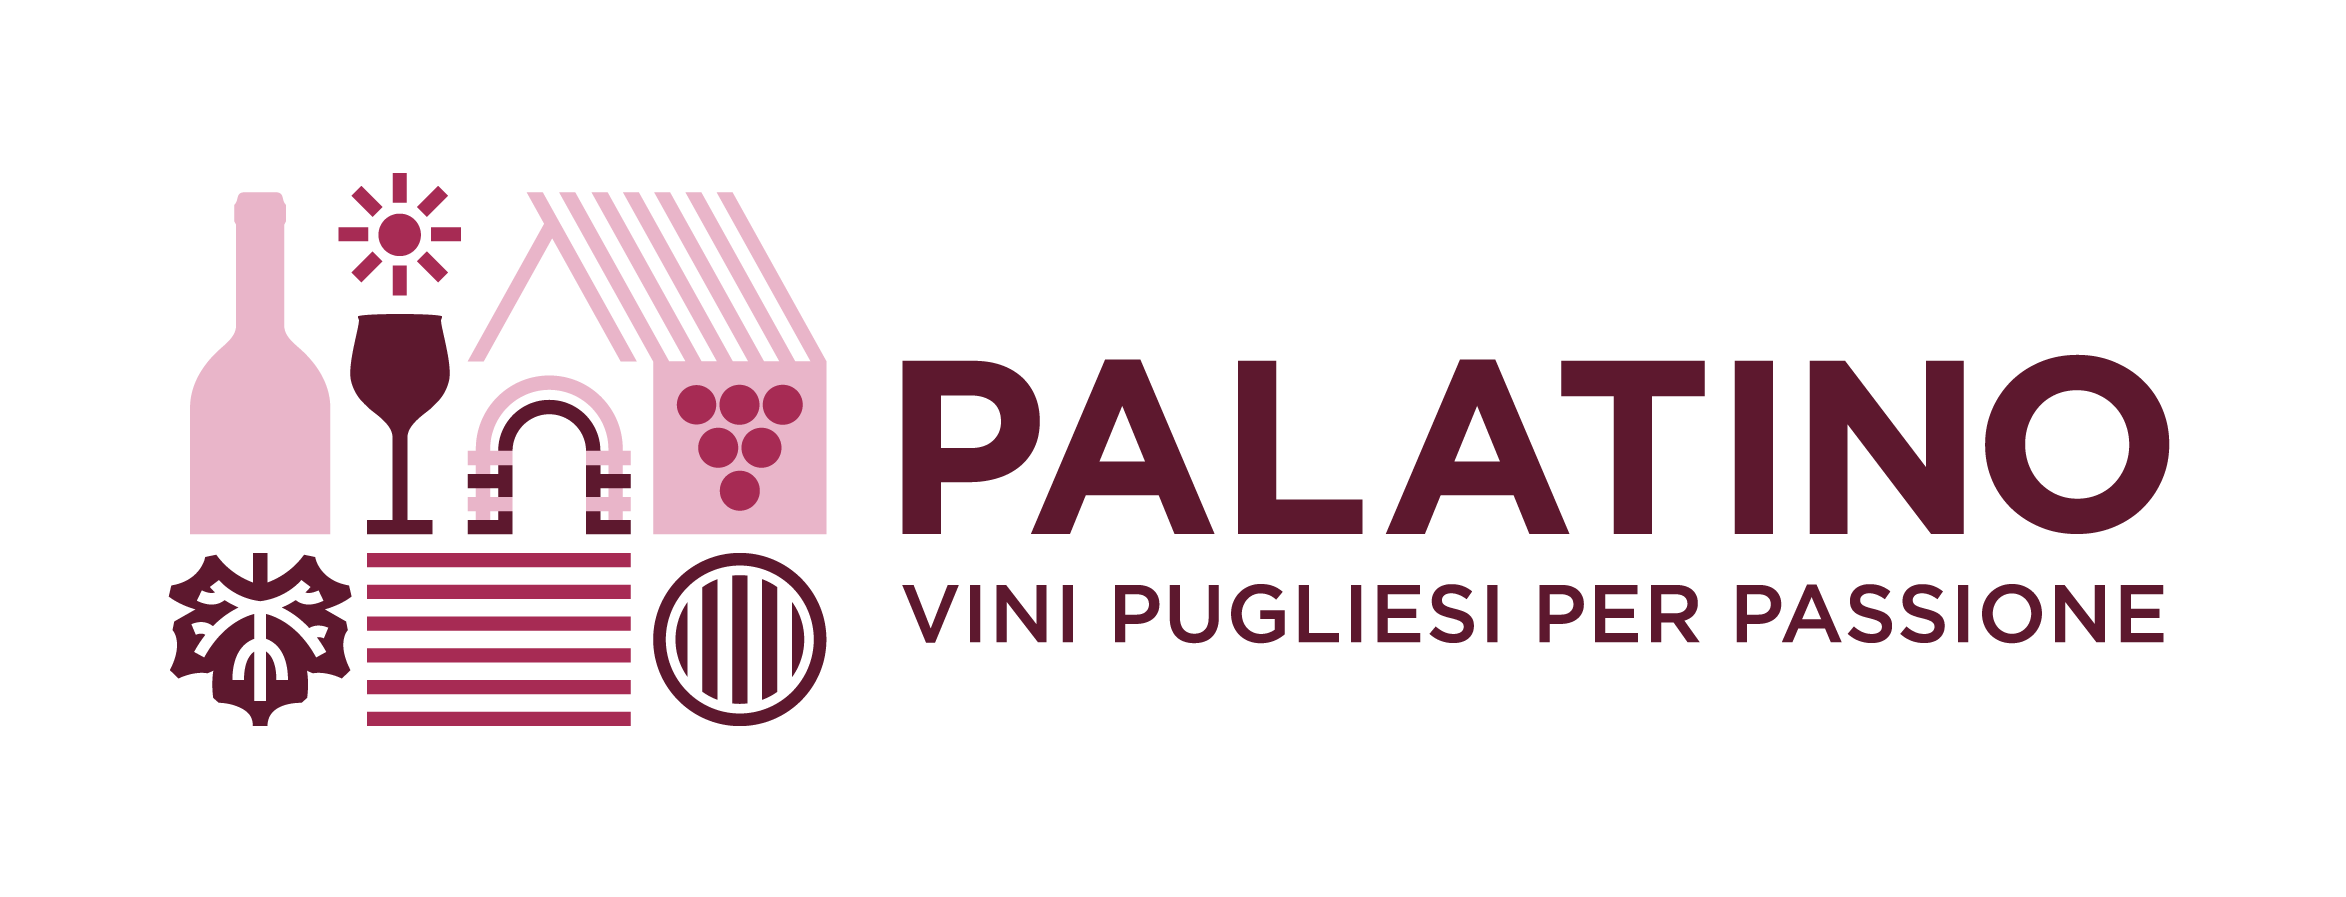 Palatino Vini Pugliesi - Un Calice Di Puglia su Dilloconilvino.it